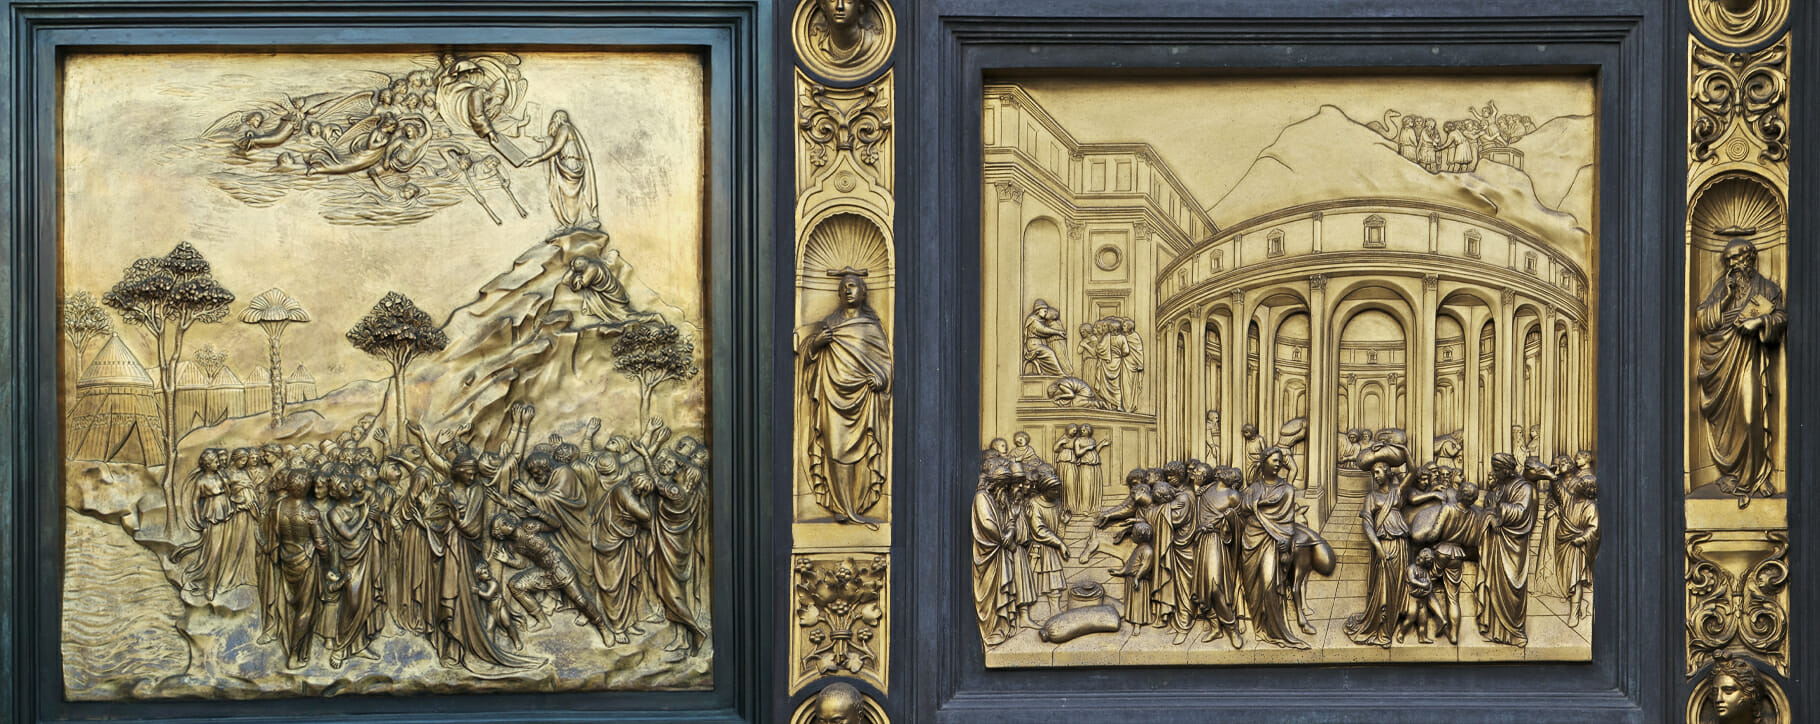 Gates of paradise renaissance bronze